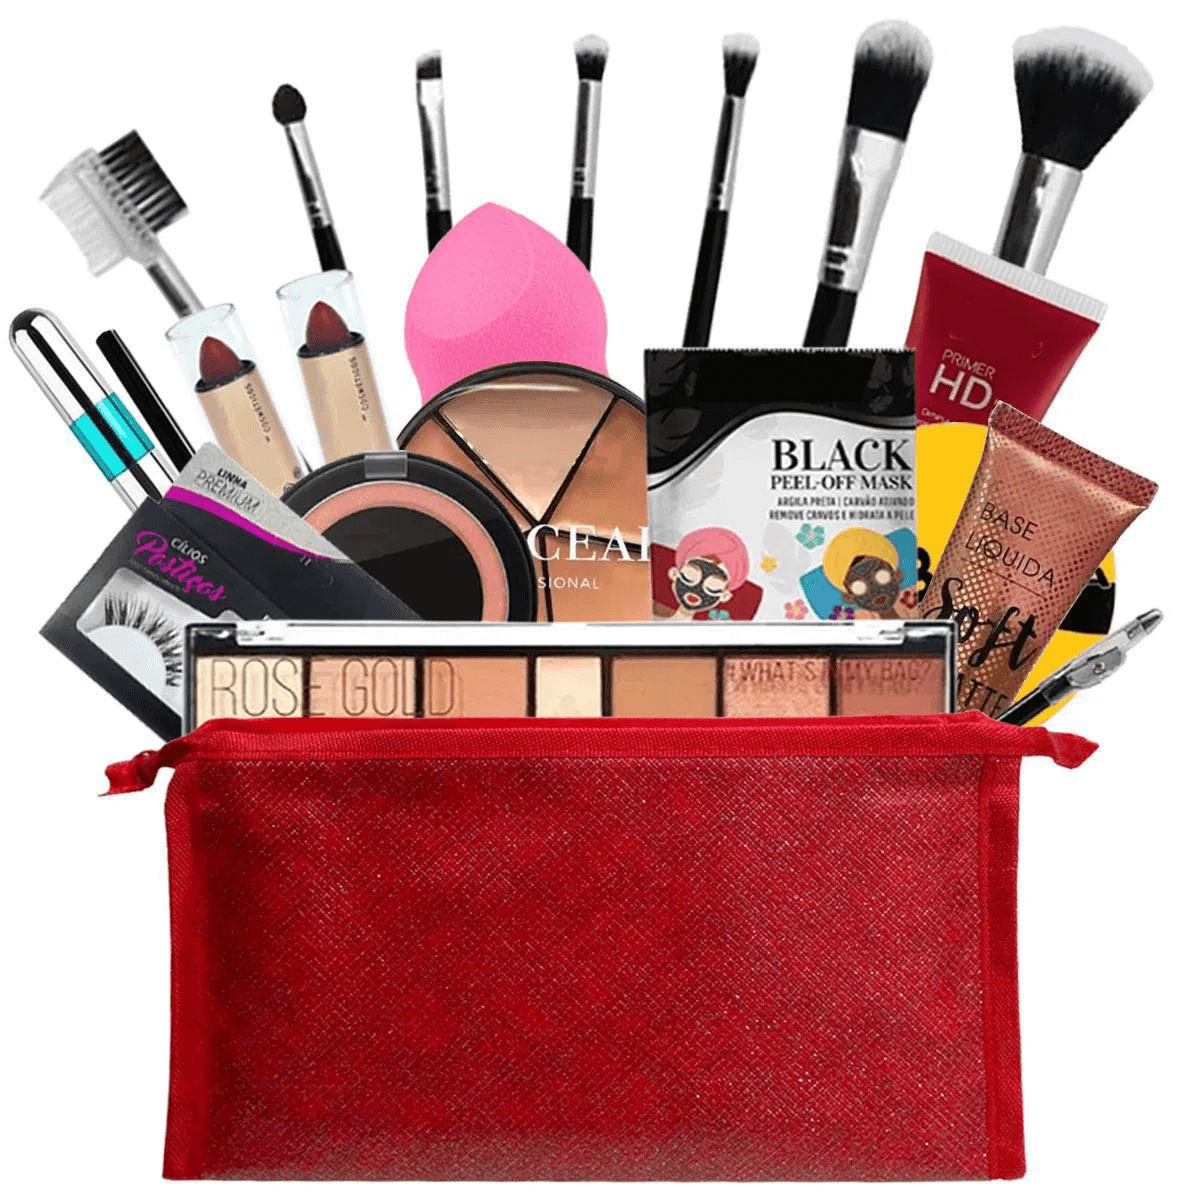 Kit de maquiagem completo com vários itens, pincéis e maquiagens em uma necessaire vermelha